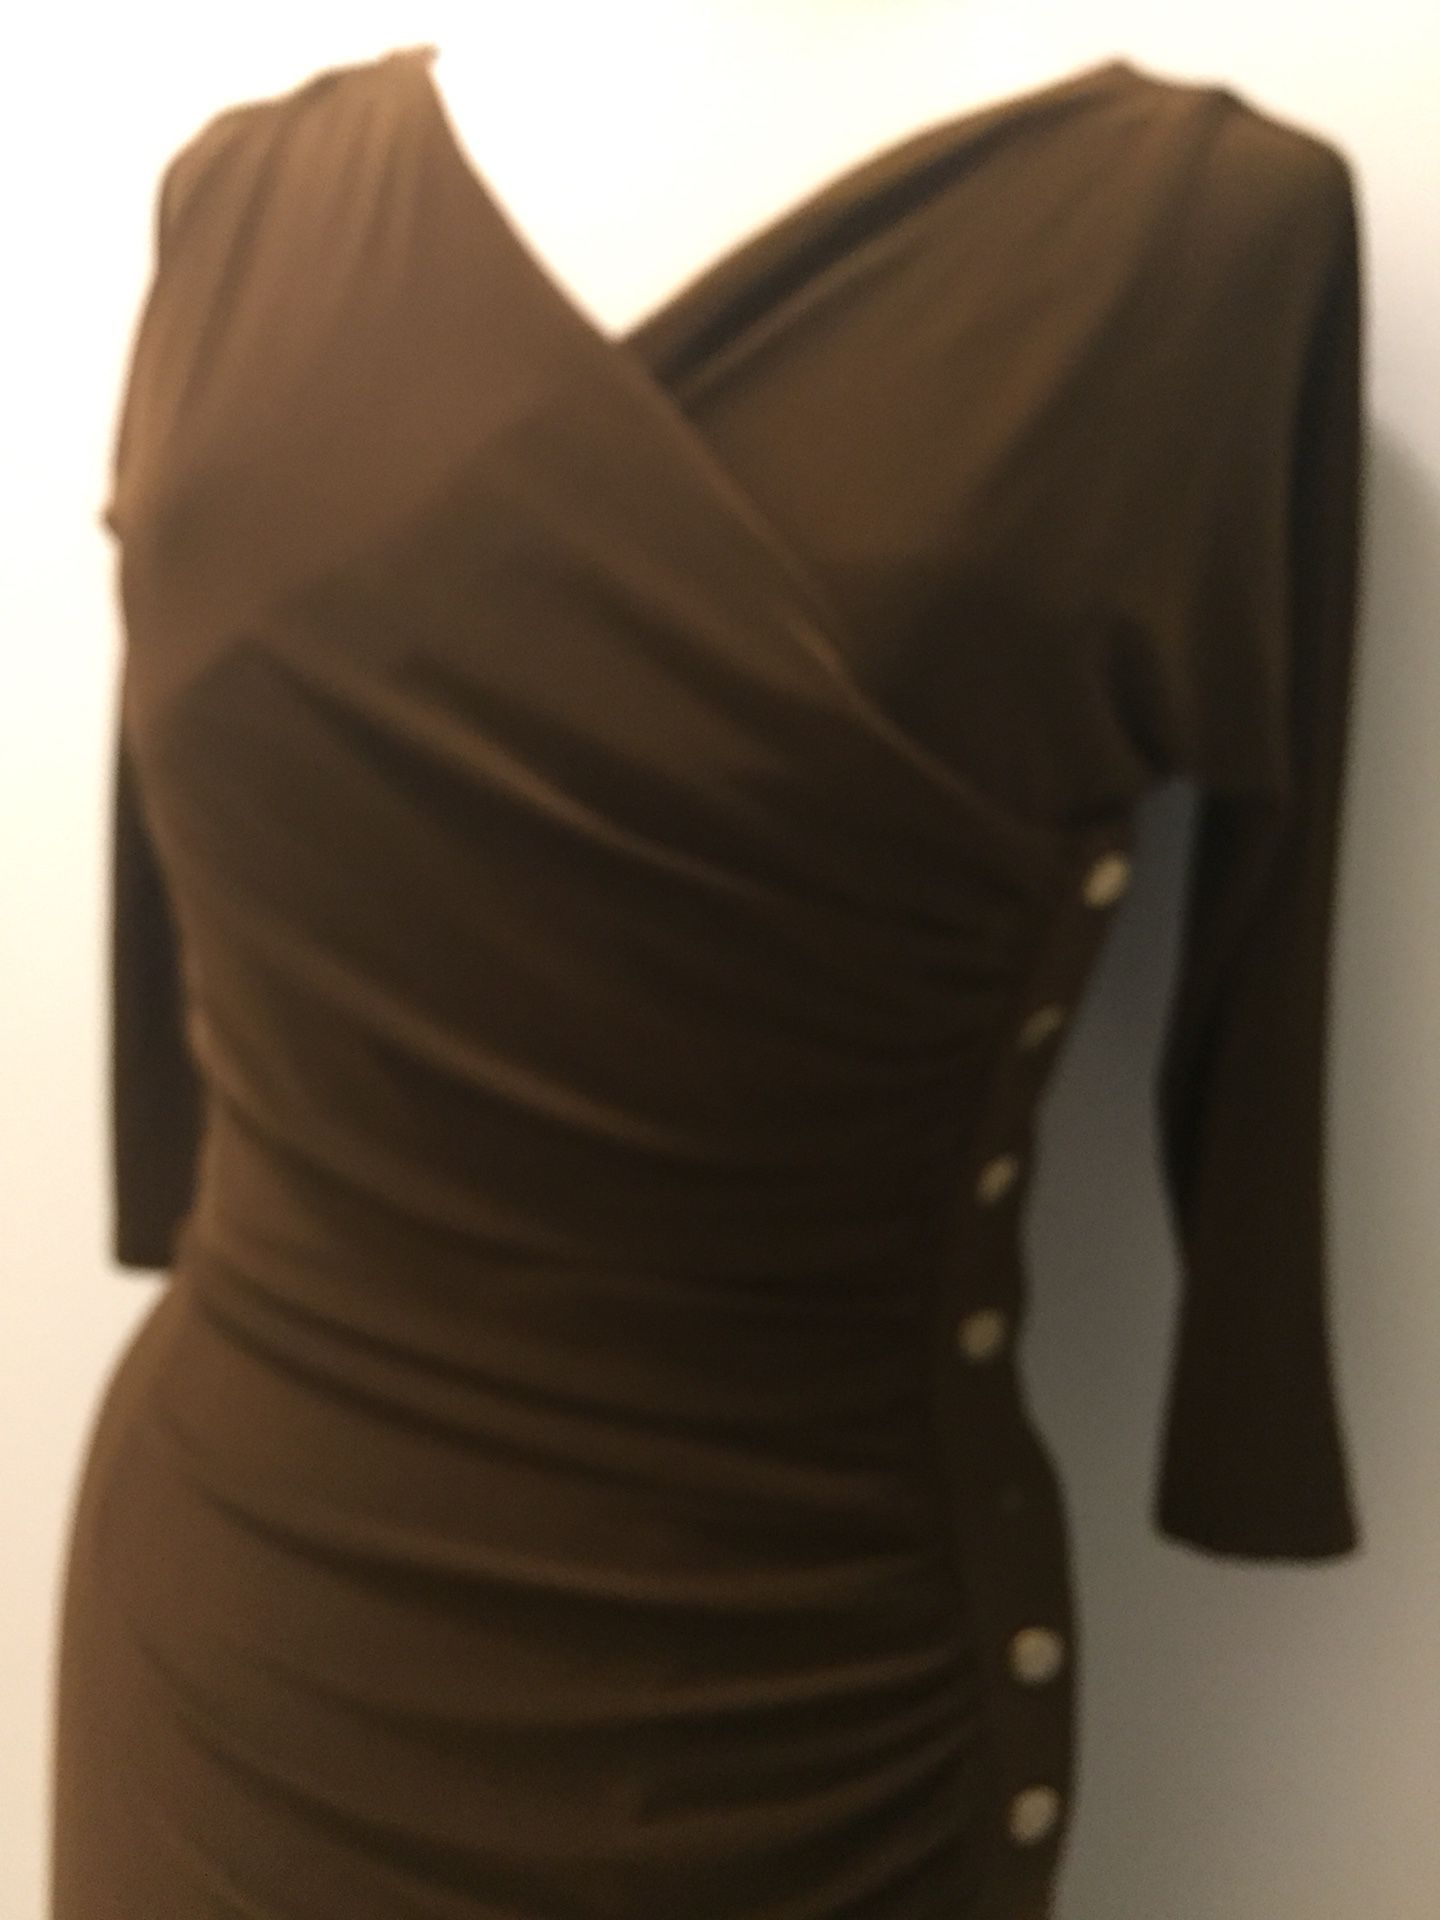 Ralph Lauren Dress Size 8. Like New. Missing a button.